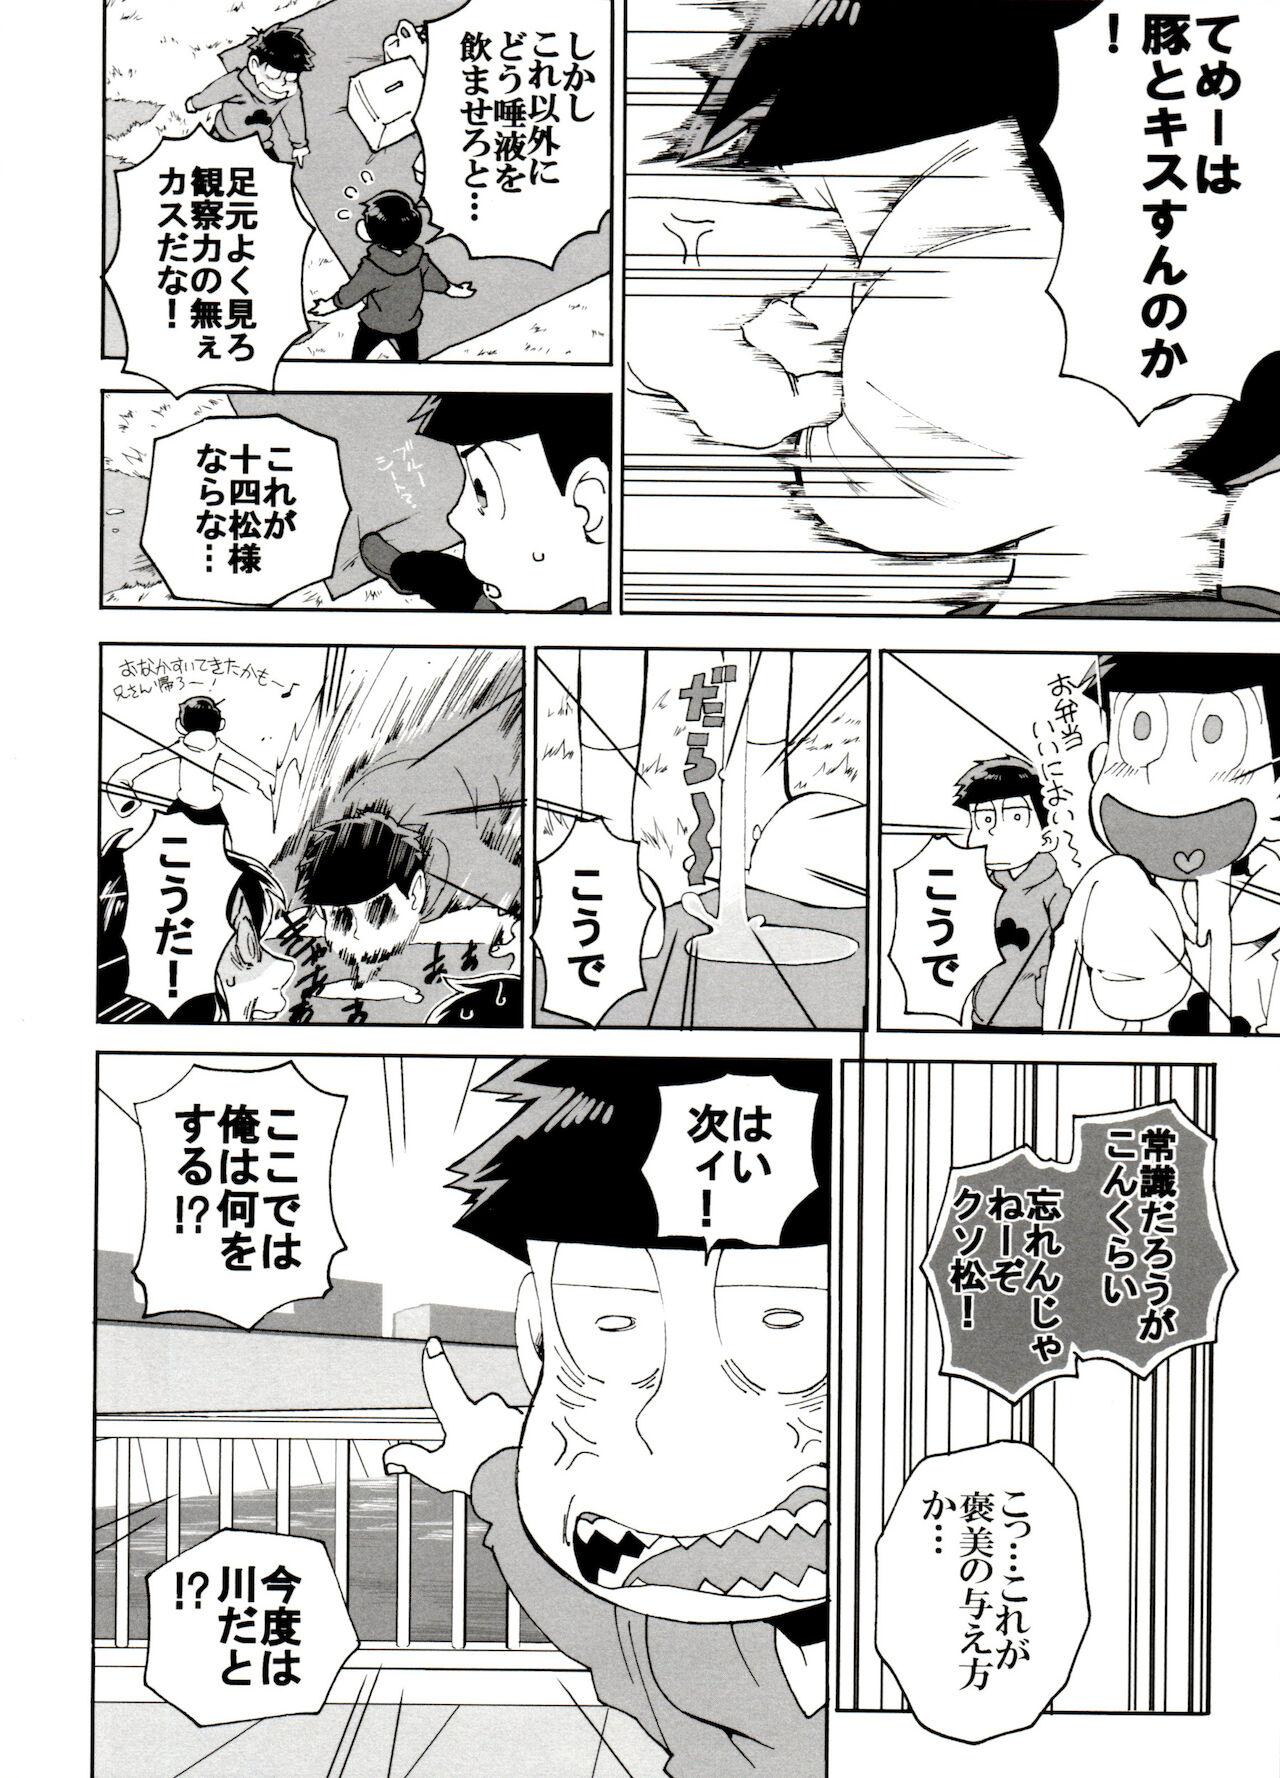 Skinny SM Matsu 2 - Osomatsu-san Relax - Page 10